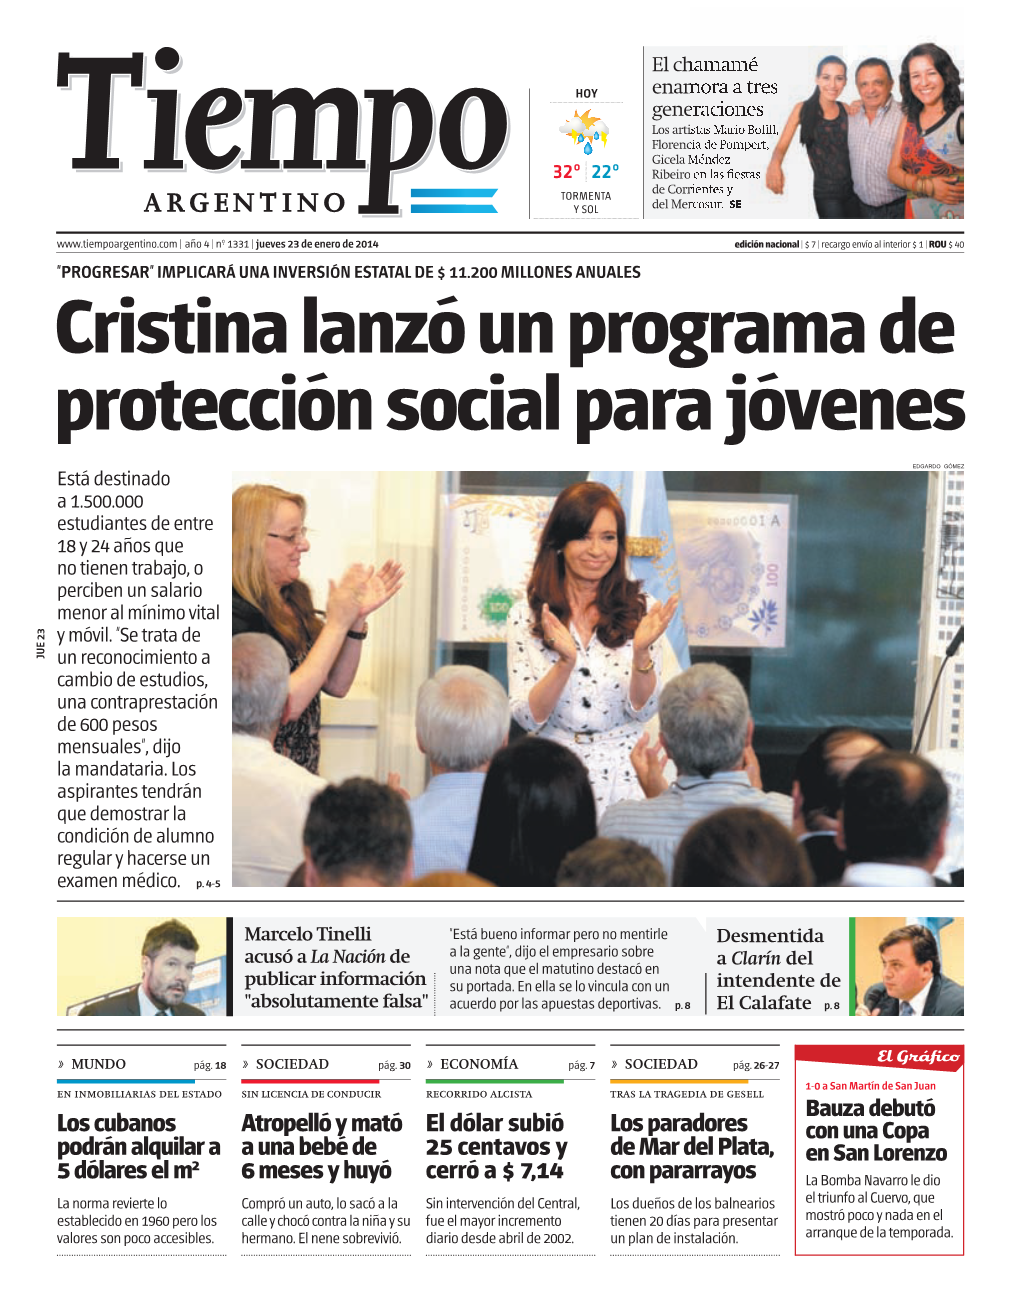 Cristina Lanzó Un Programa De Protección Social Para Jóvenes